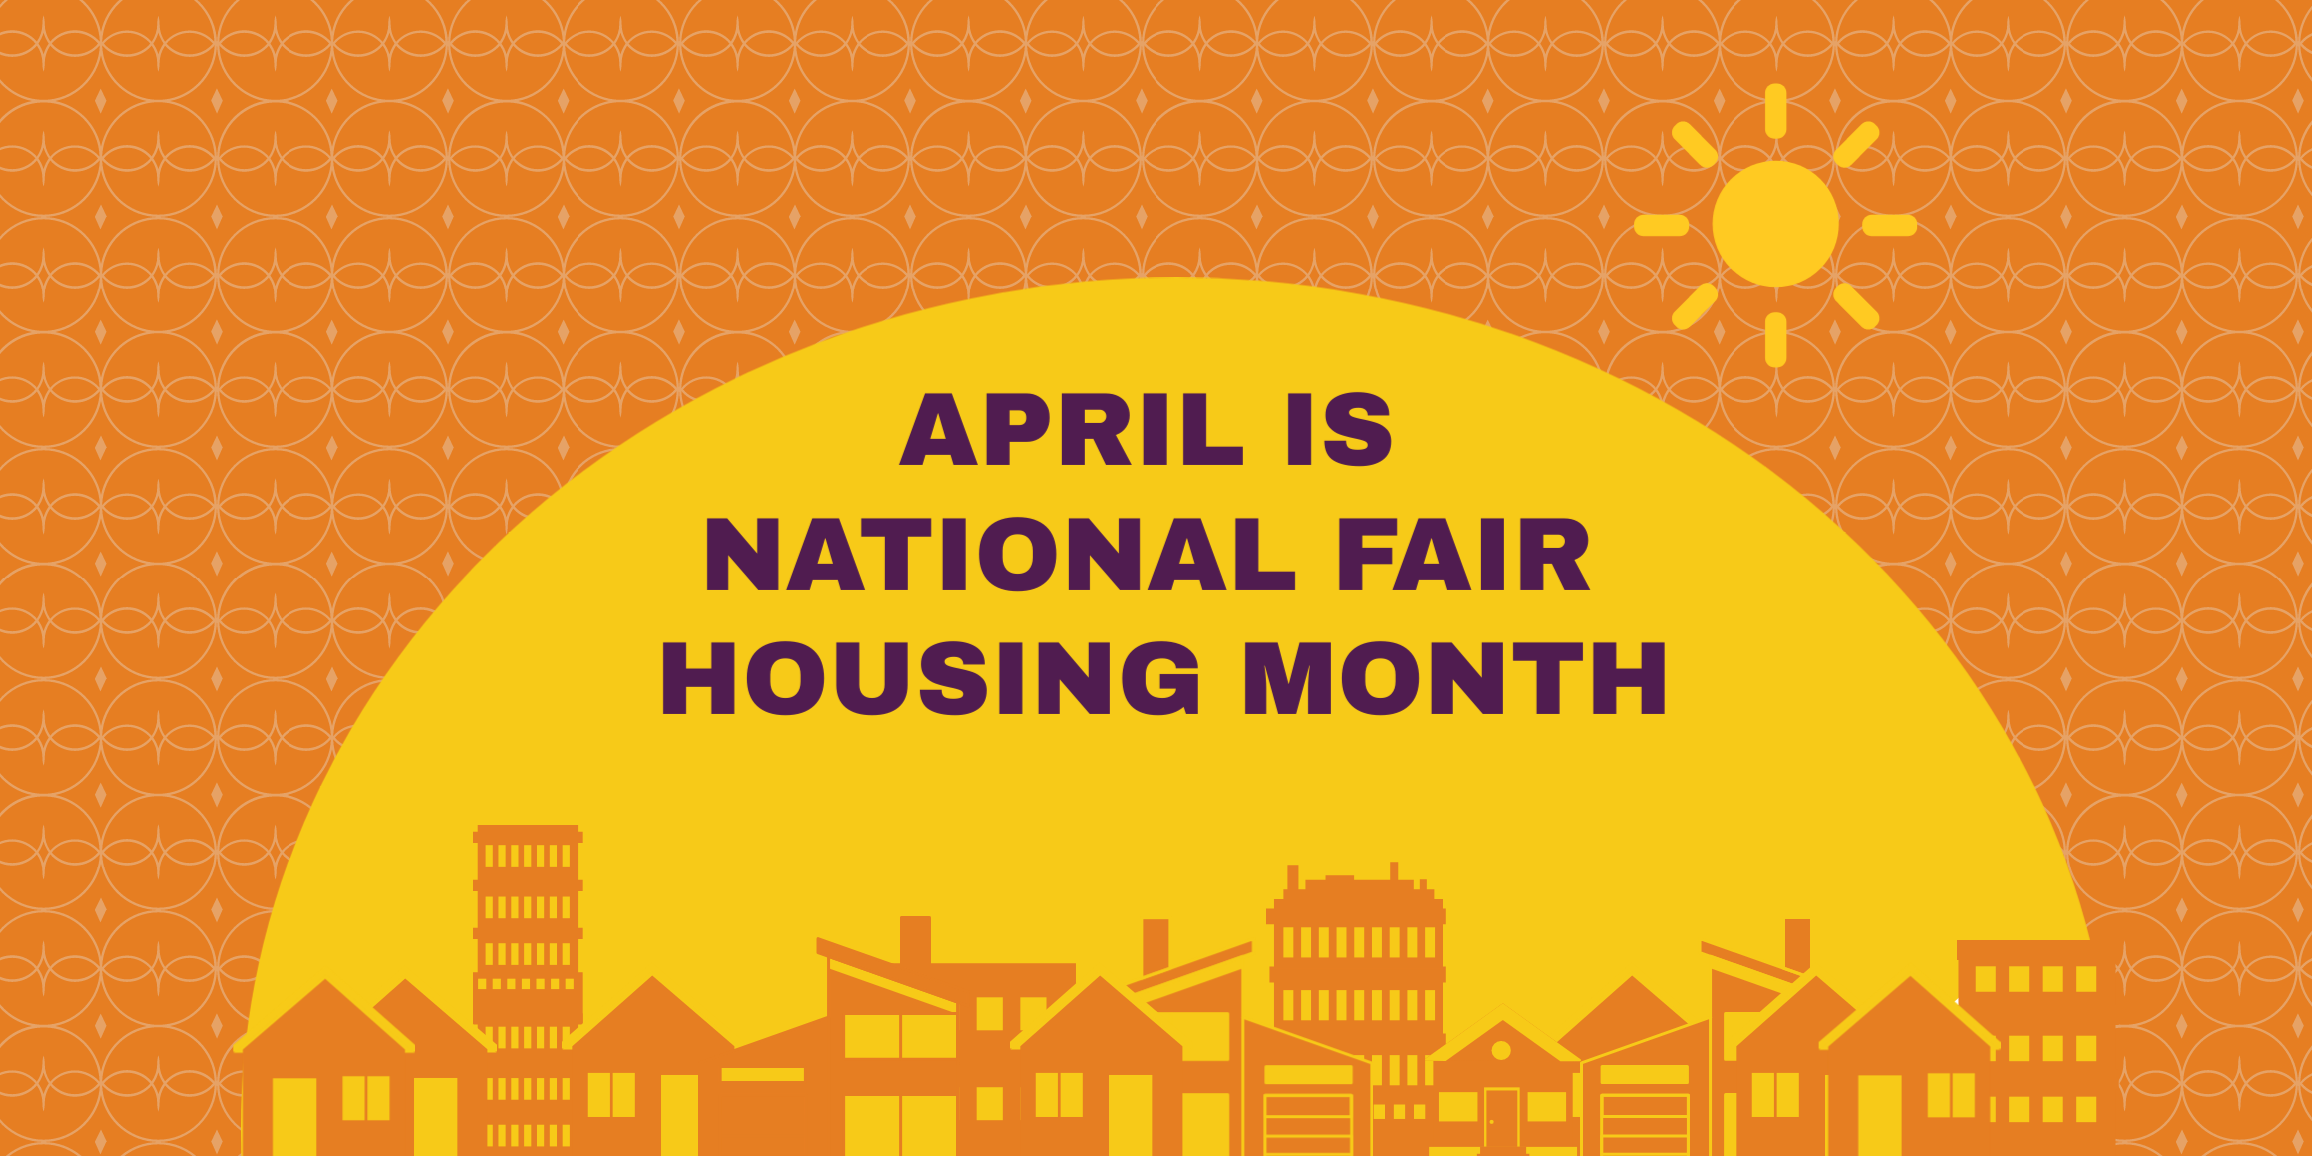 National Fair Housing Month